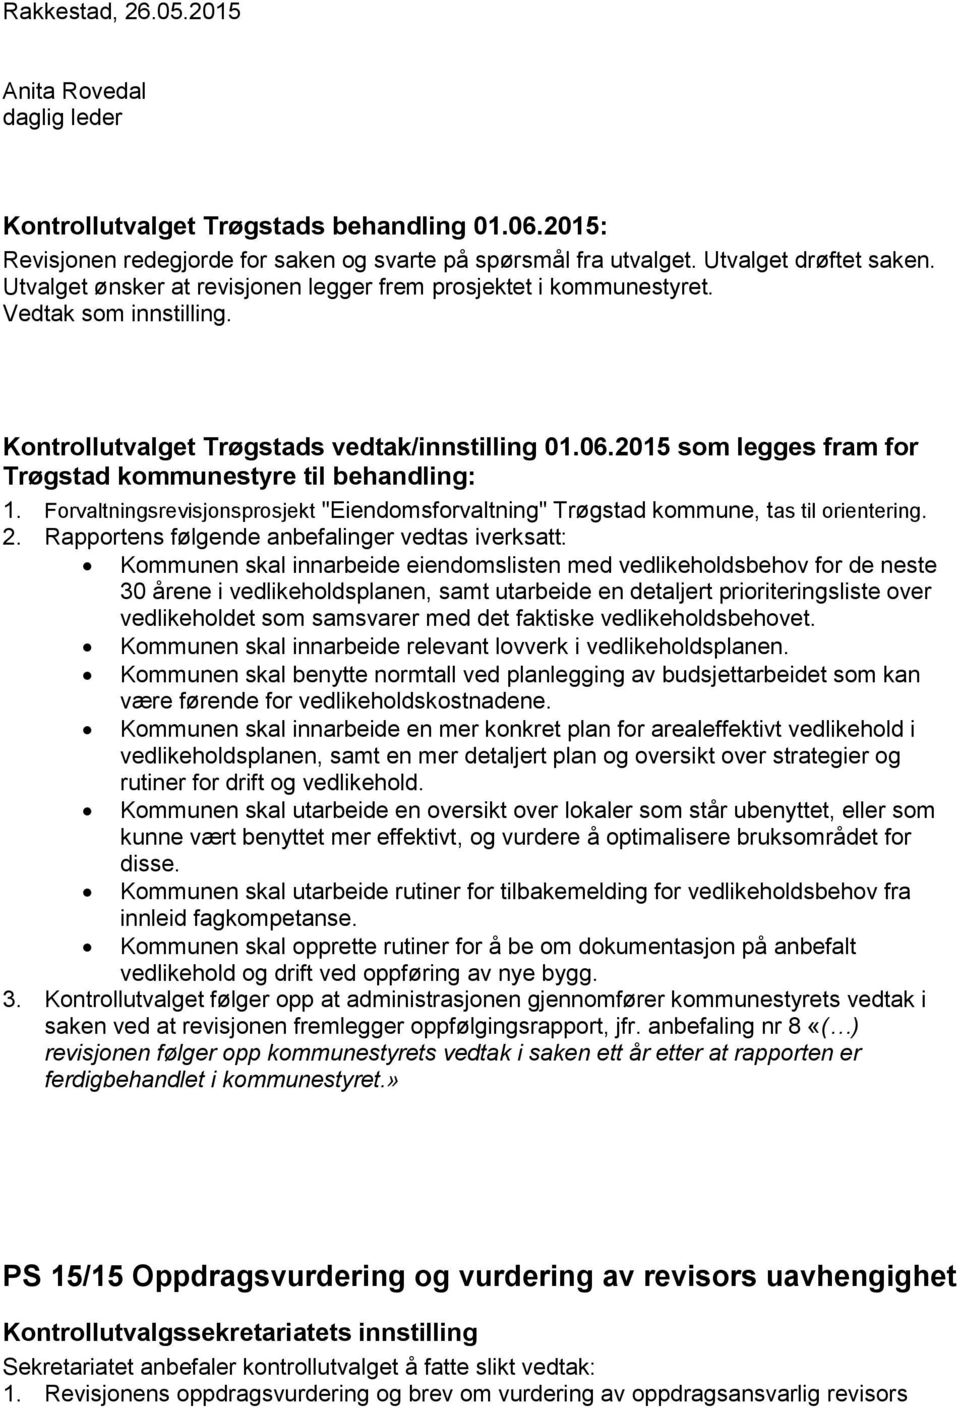 Forvaltningsrevisjonsprosjekt "Eiendomsforvaltning" Trøgstad kommune, tas til orientering. 2.